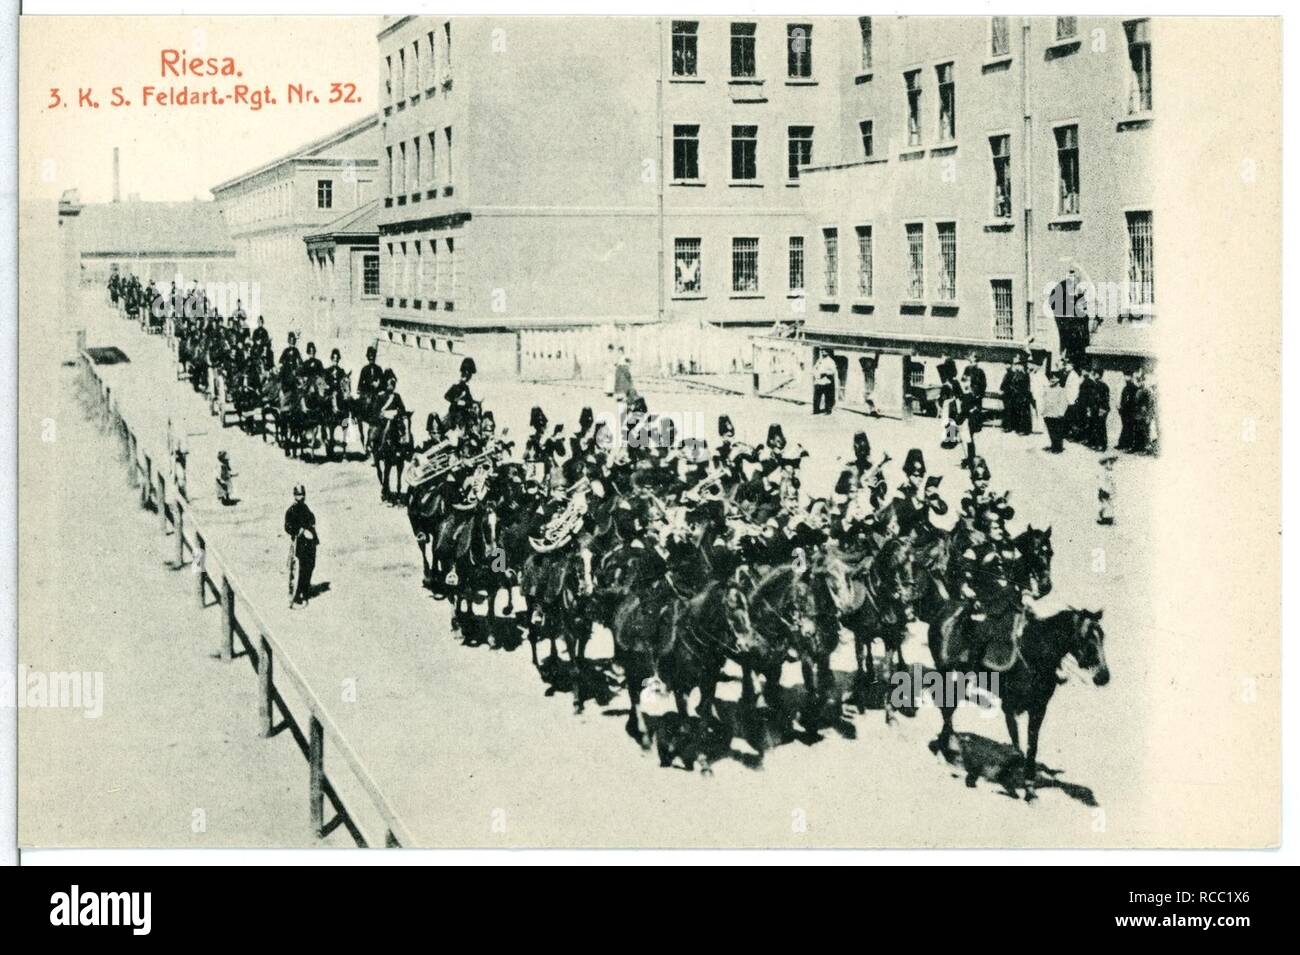 11758 - Riesa -1910-3. Königlich Sächsisches Feldartillerie-Regiment Nr. 32 - Stockfoto